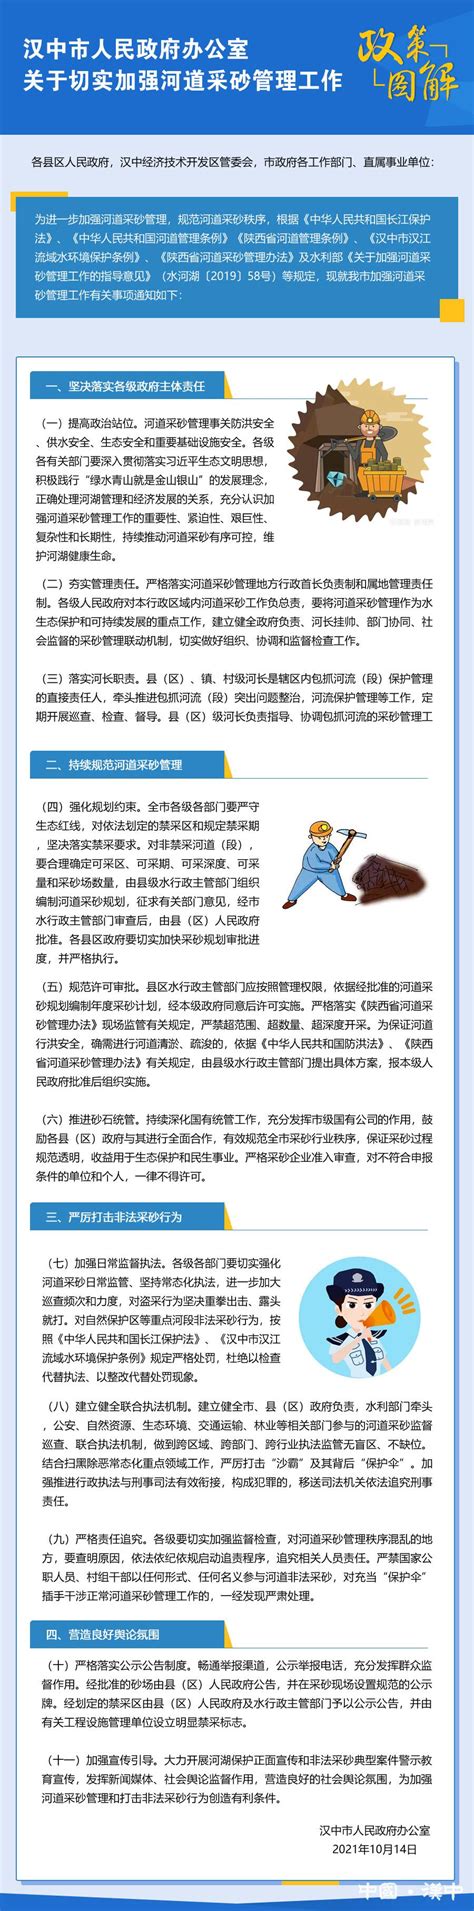 图解：汉中市人民政府办公室关于切实加强河道采砂管理工作的通知 - 图文解读 - 汉中市人民政府